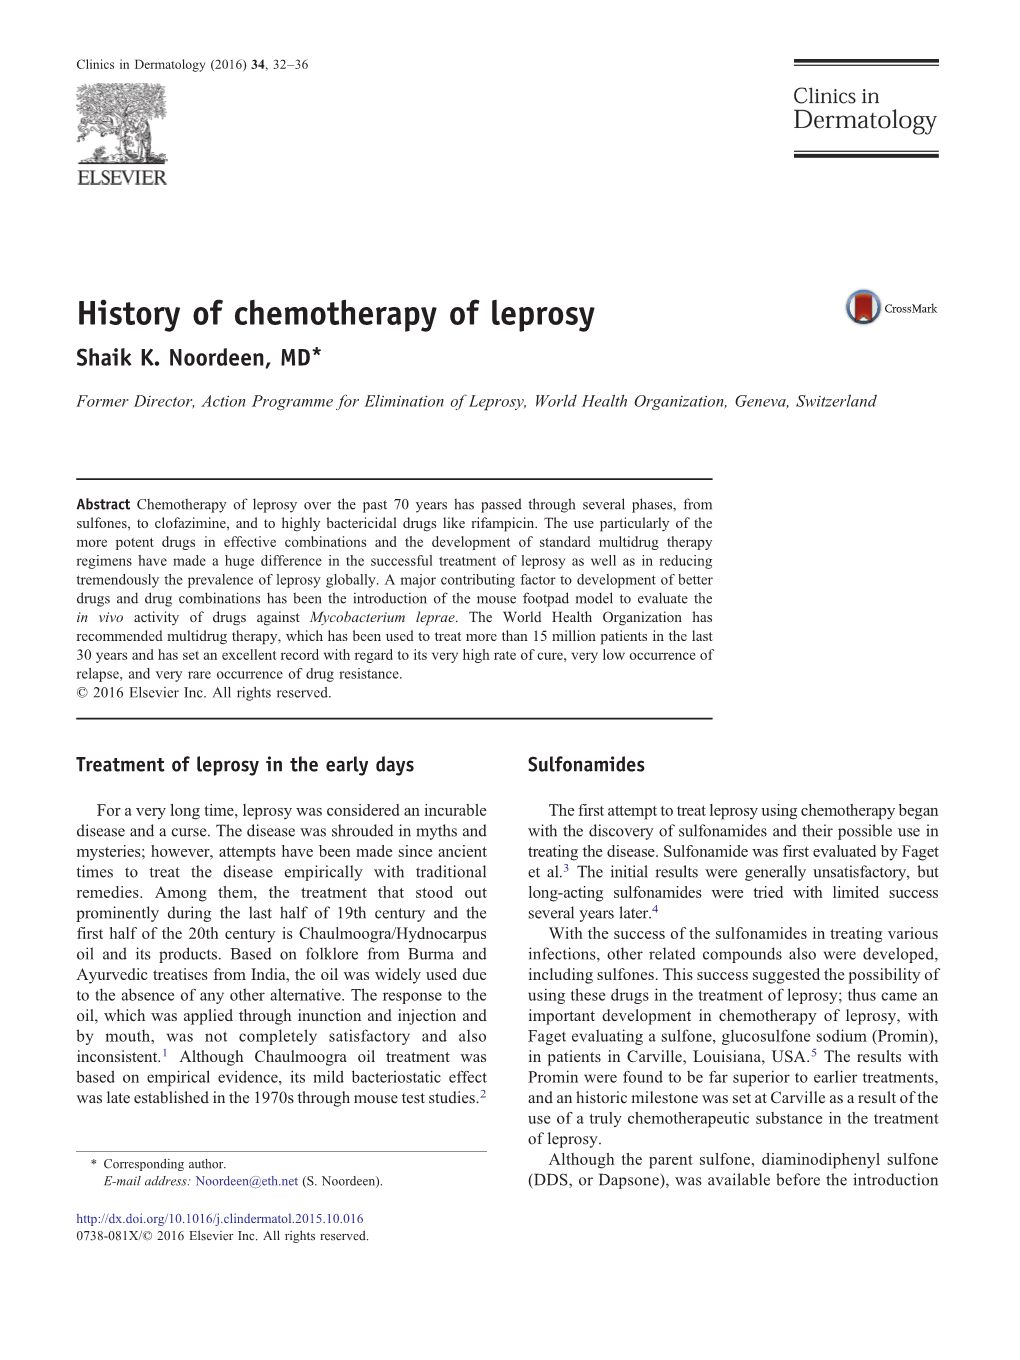 History of Chemotherapy of Leprosy Shaik K